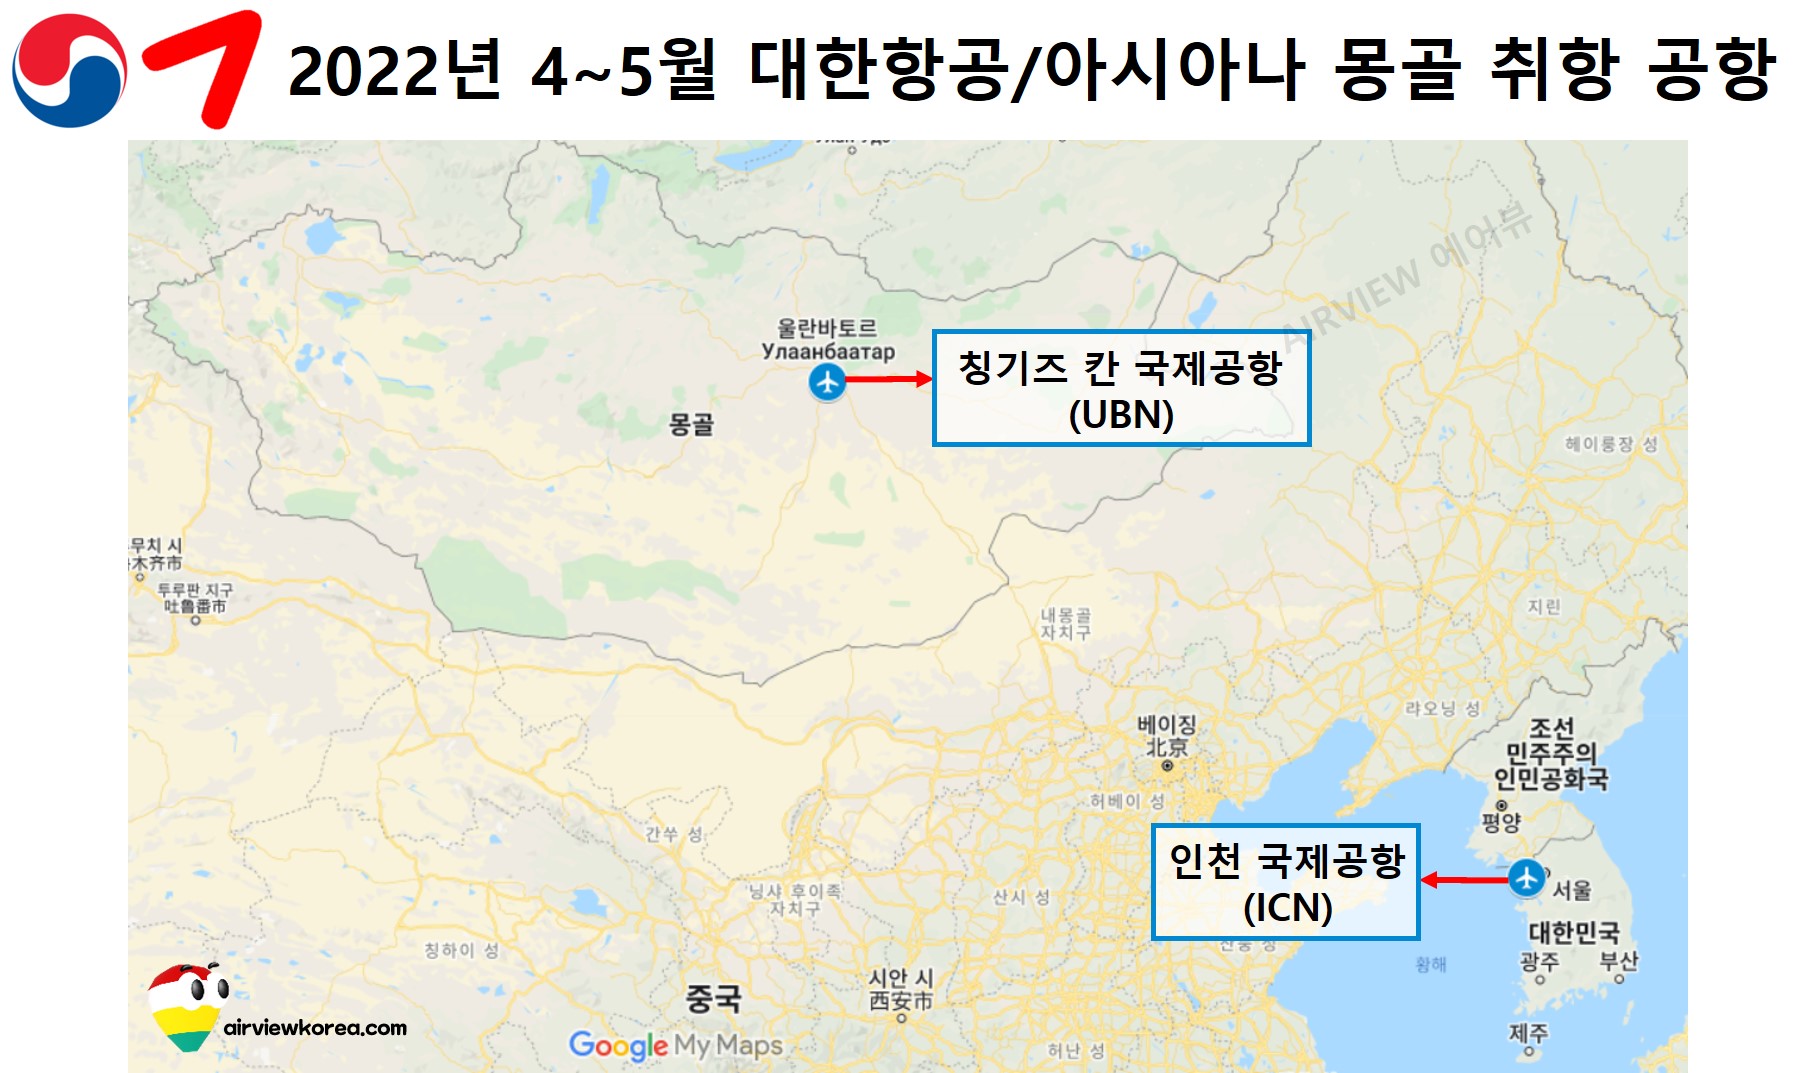 2022년 4월에서 5월까지 대한항공과 아시아나항공이 몽골에 취항하는 공항 위치를 나타낸 지도